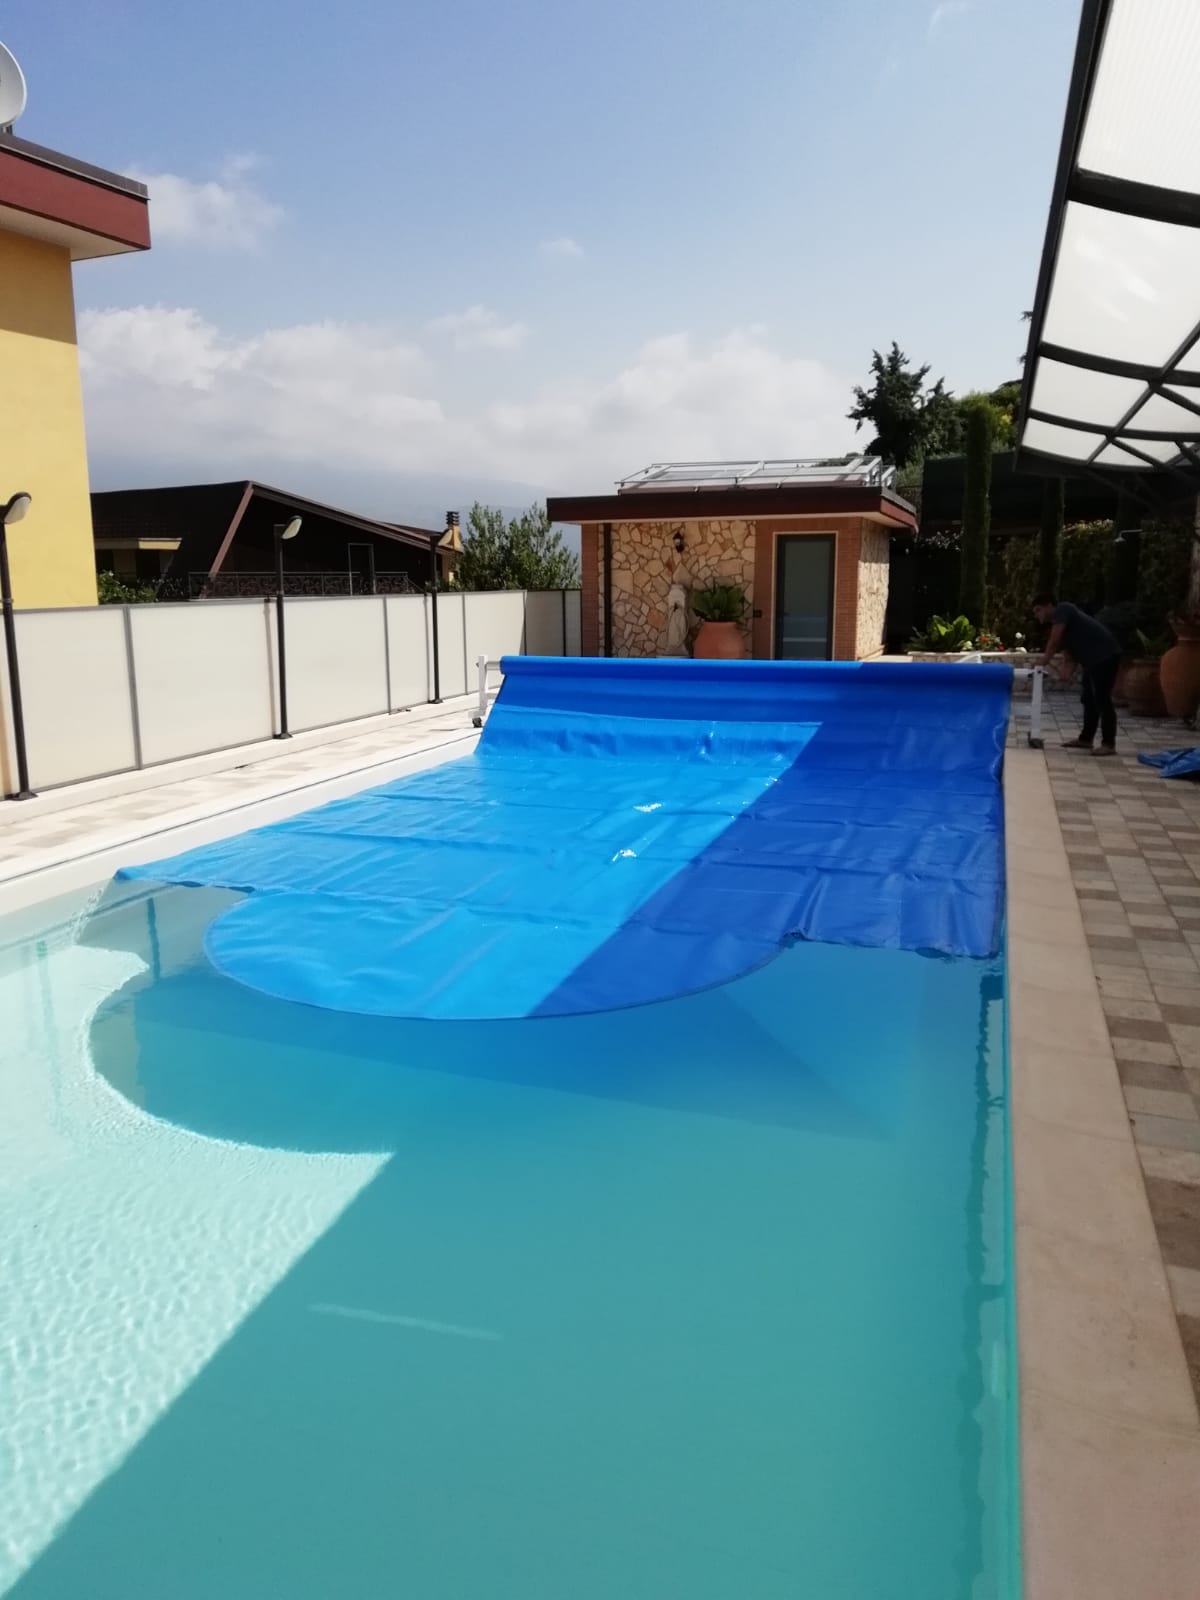 Mantas térmicas para piscina: características, ventajas y tipos -  Cobertores para Piscina